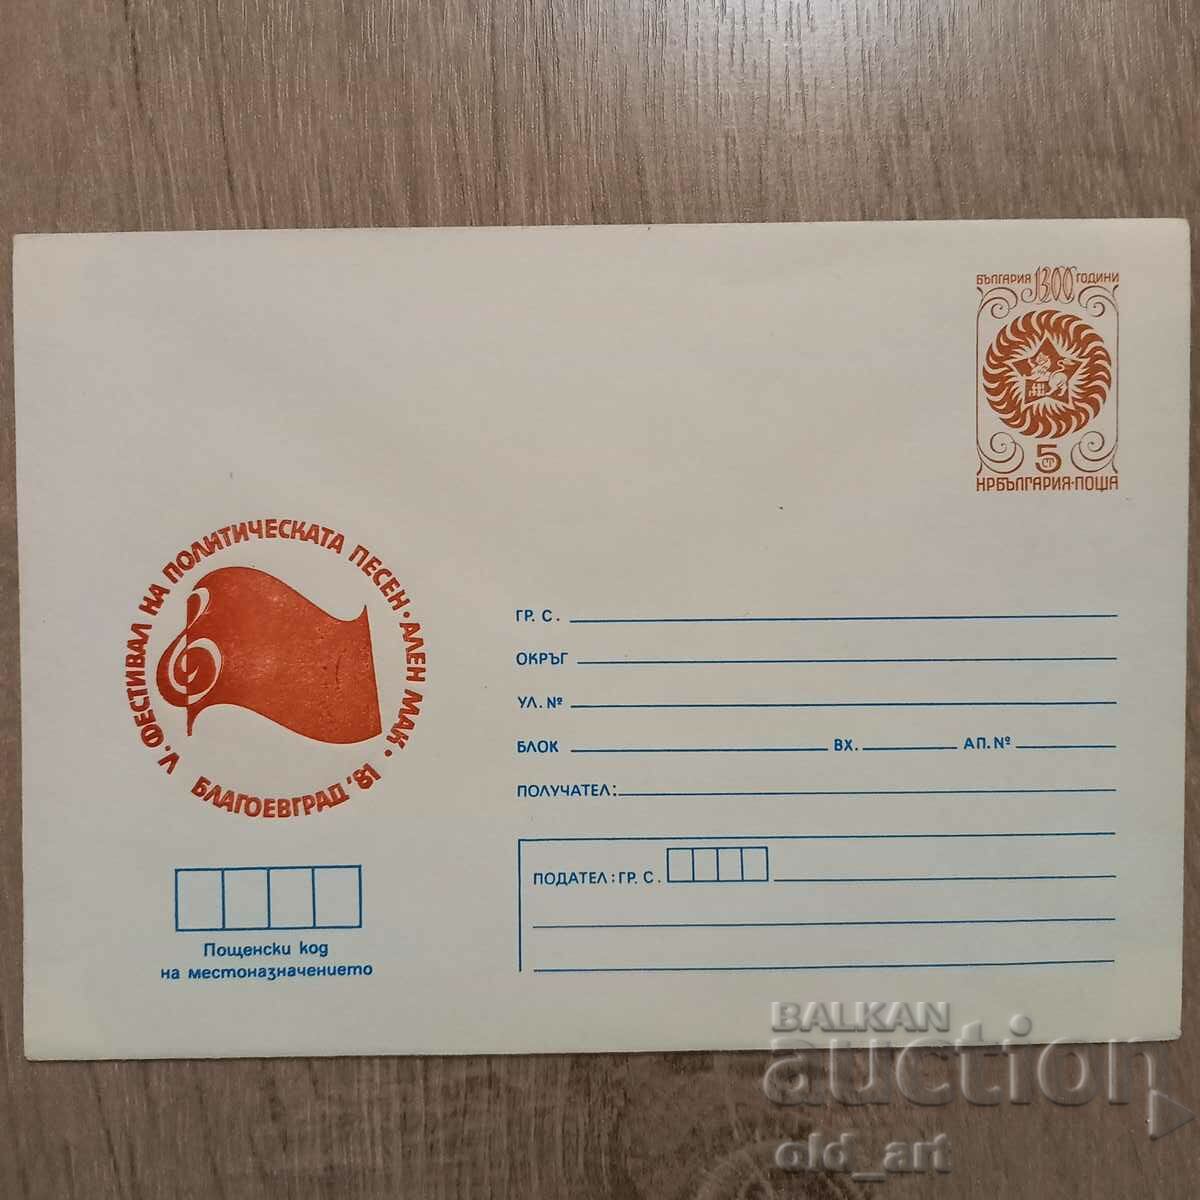 Postal envelope - V festival of political song Alen Mak